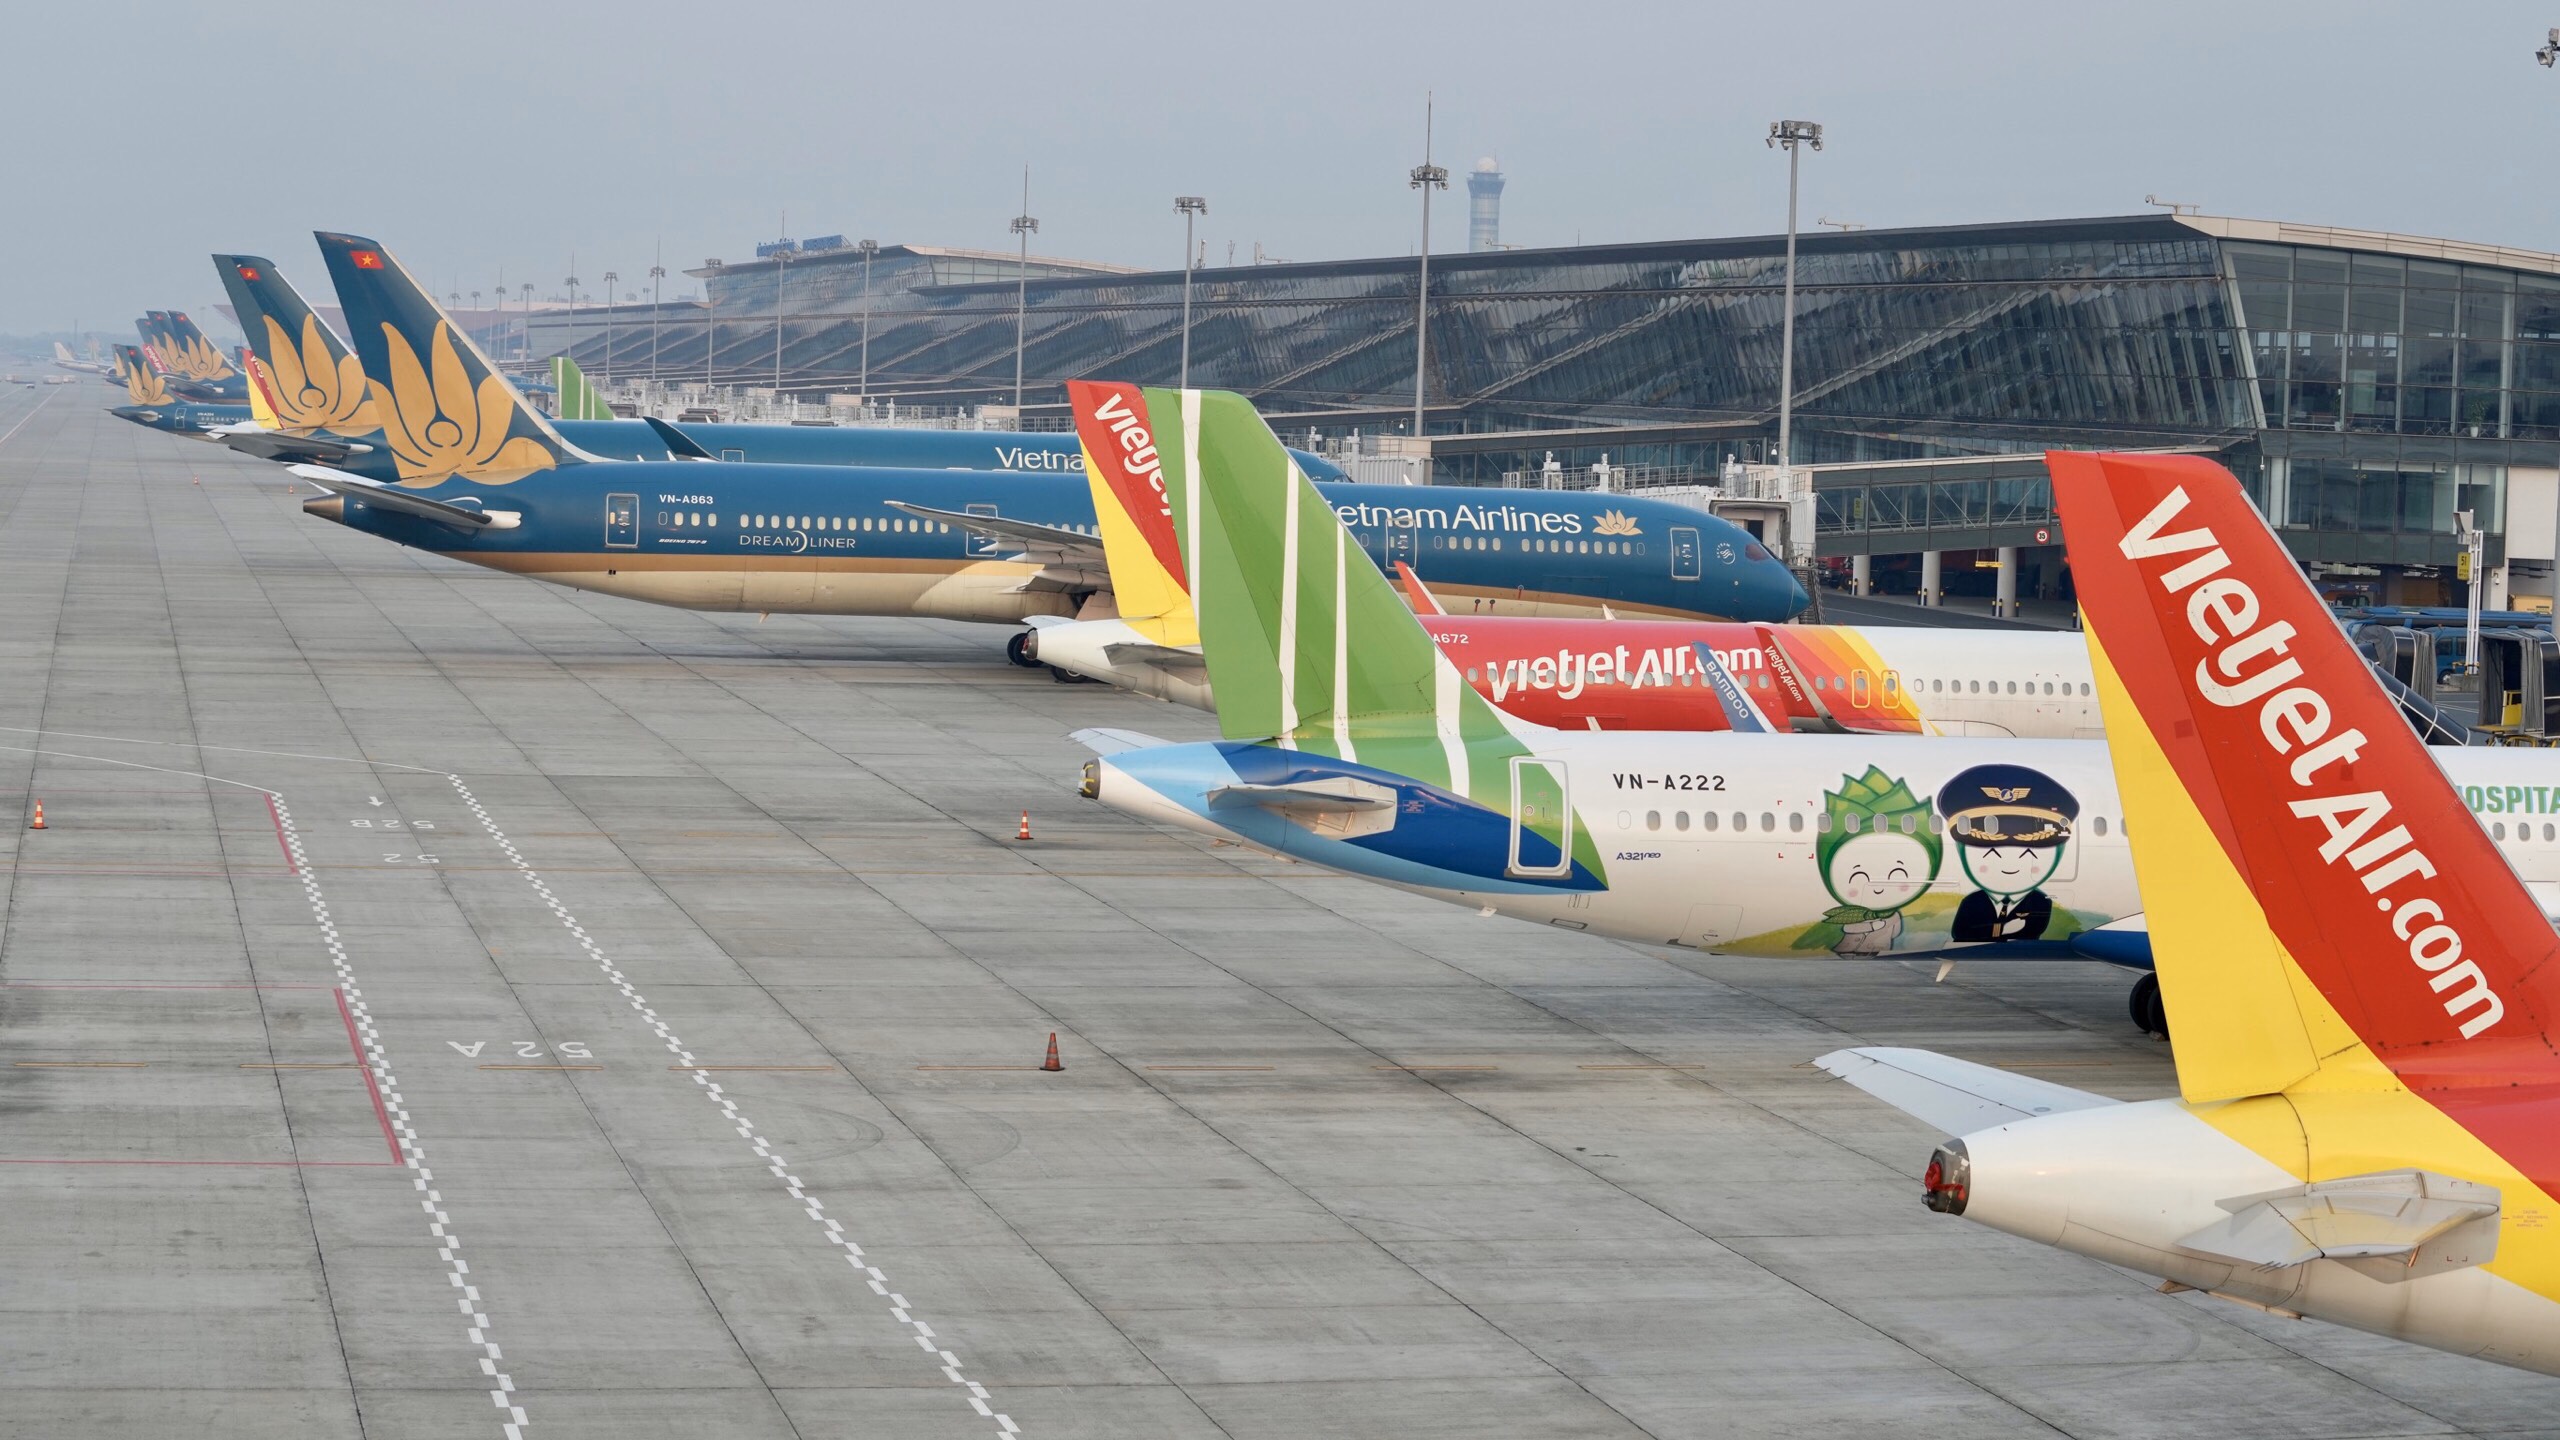 Cục Hàng không tiếp tục yêu cầu các hãng hàng không dừng mở bán vé trên các đường bay nội địa